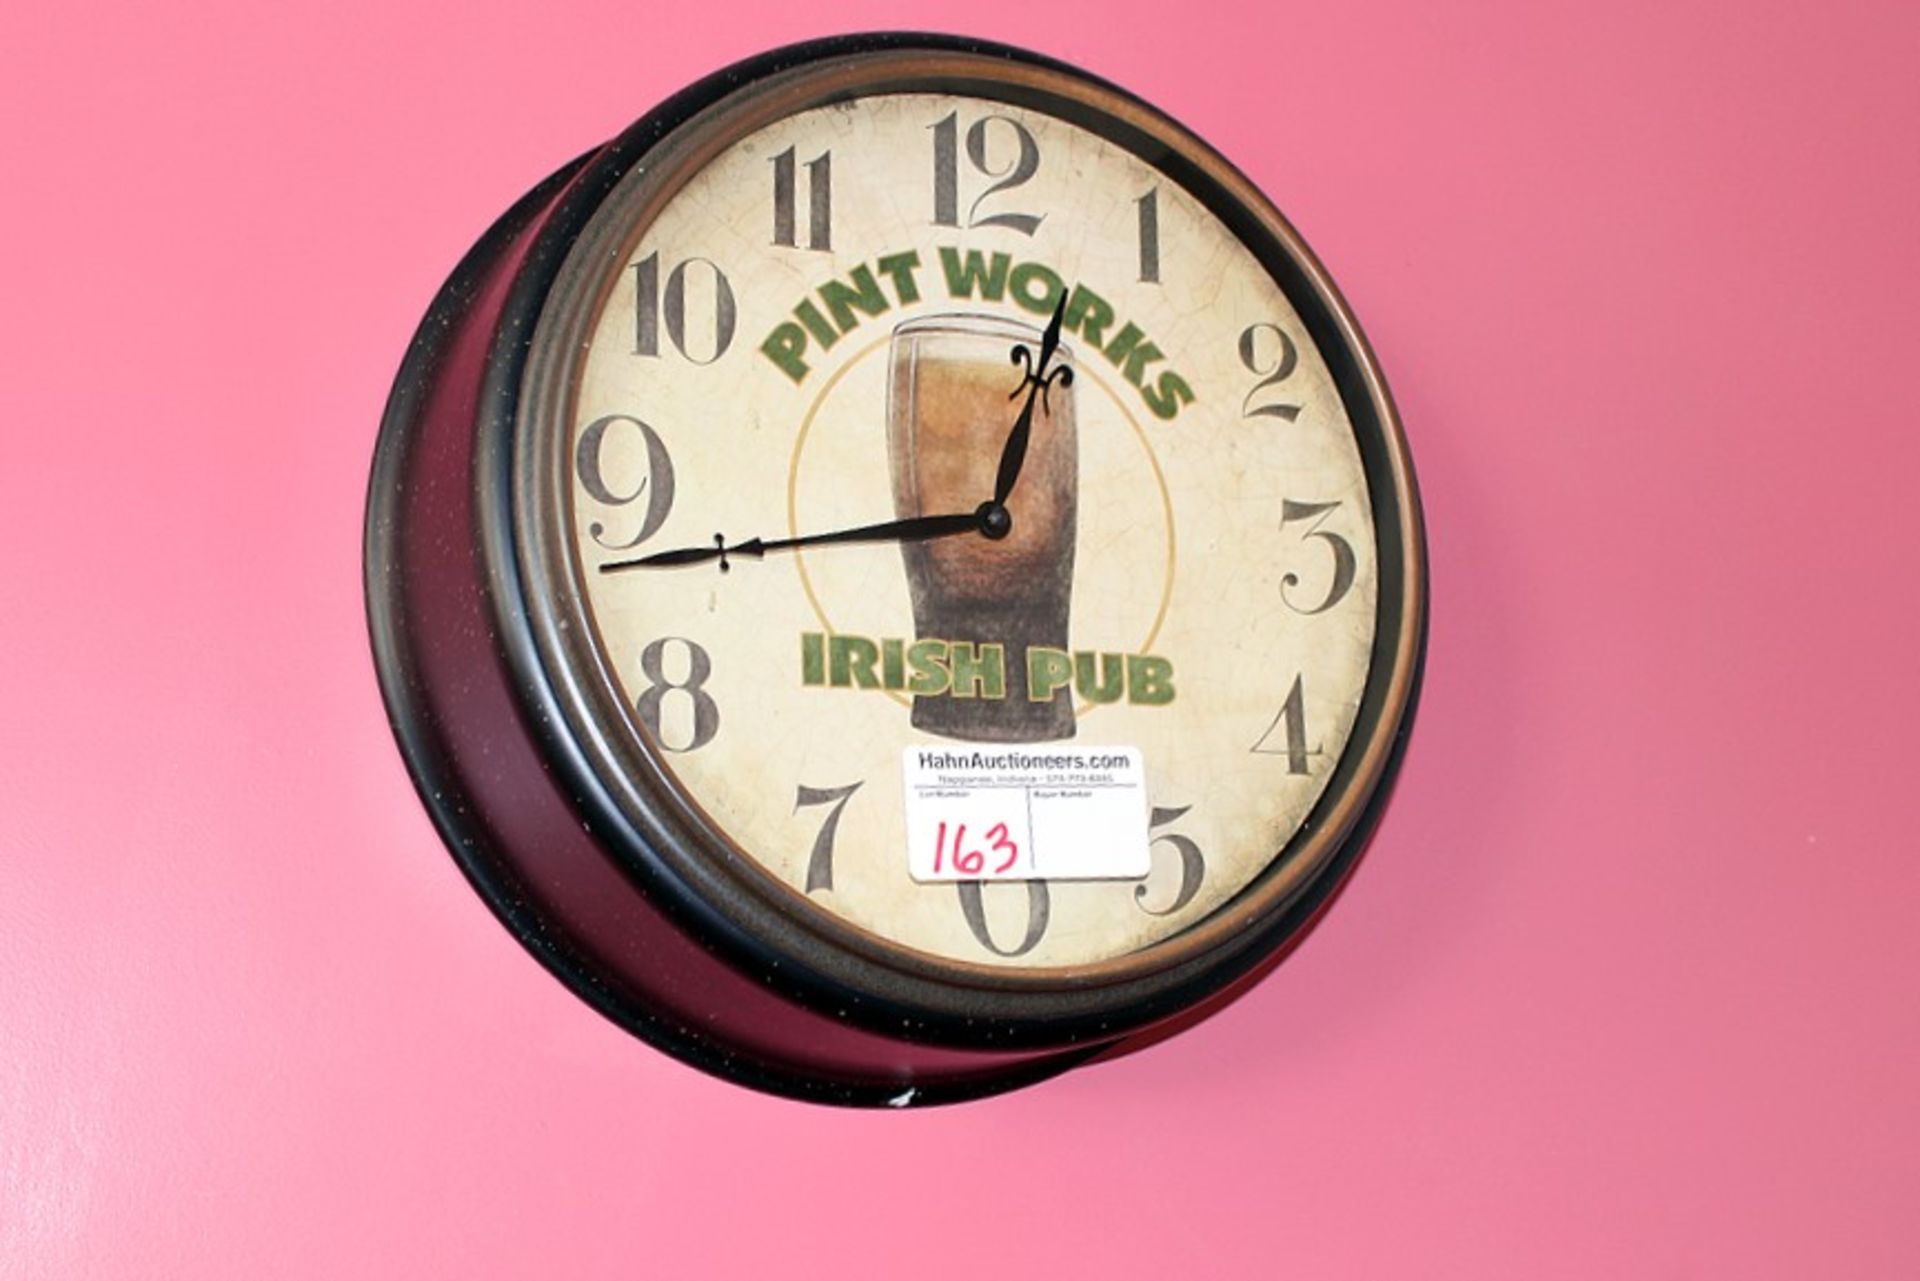 Pint Works Irish pub clock